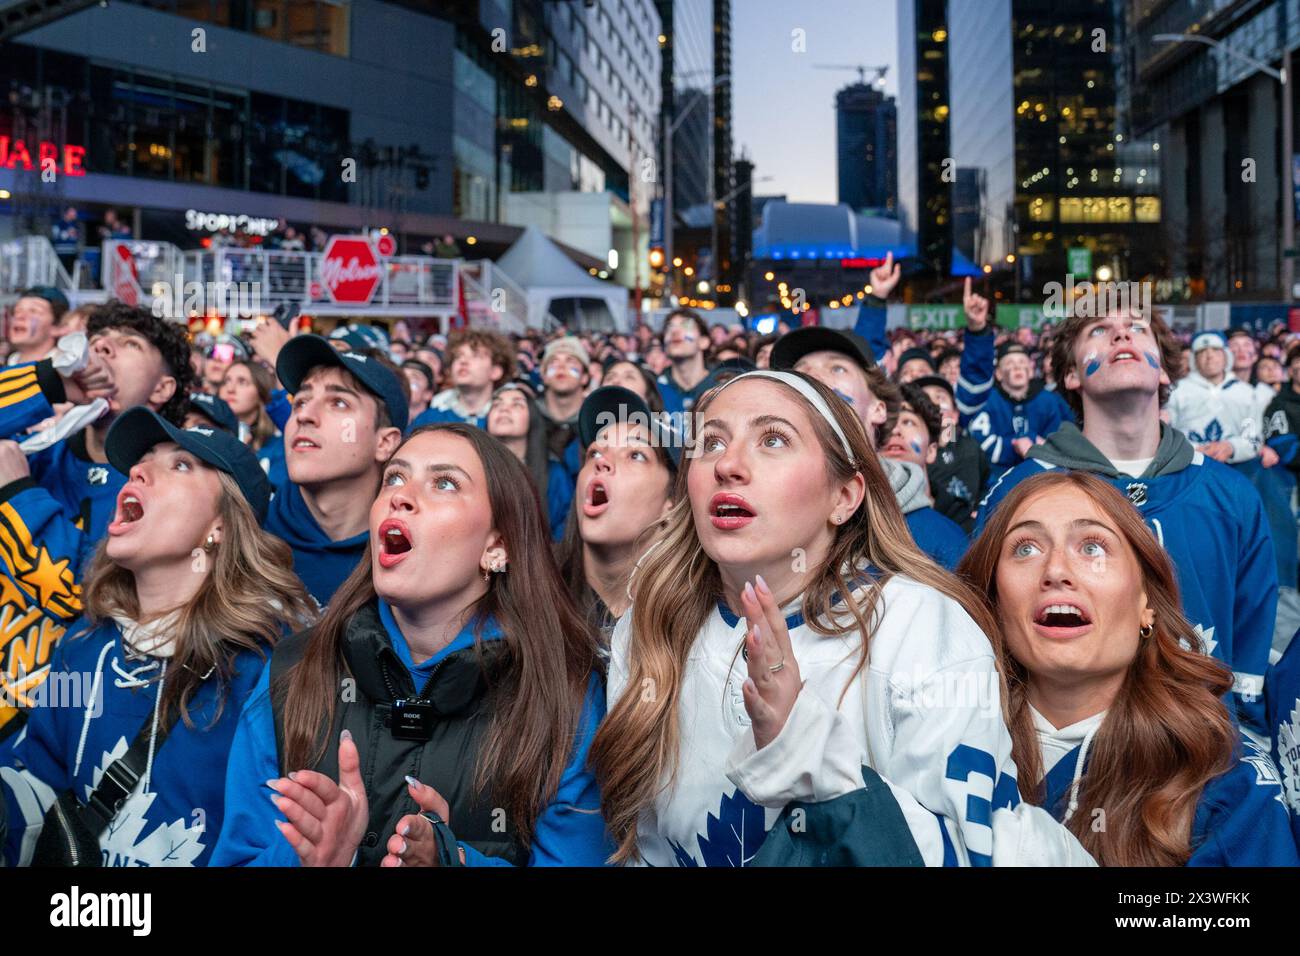 24 aprile 2024, Toronto, Ontario, Canada: I tifosi si riuniscono a Maple Leaf Square fuori Scotibank Arena, guardando il primo turno, la partita di playoff di gara 4 dei Toronto Maple Leafs contro i Boston Bruins su uno schermo gigante. Durante le partite di playoff dei Toronto Maple Leafs, Maple Leaf Square si trasforma in un mare di blu e bianco, riecheggiando i canti dei tifosi appassionati che si radunano con entusiasmo dietro la ricerca della vittoria della loro squadra. L'atmosfera elettrica irradia attesa ed eccitazione, creando ricordi indimenticabili sia per i sostenitori che per gli osservatori occasionali. (Immagine di credito: © Shawn Goldberg/SOPA IM Foto Stock